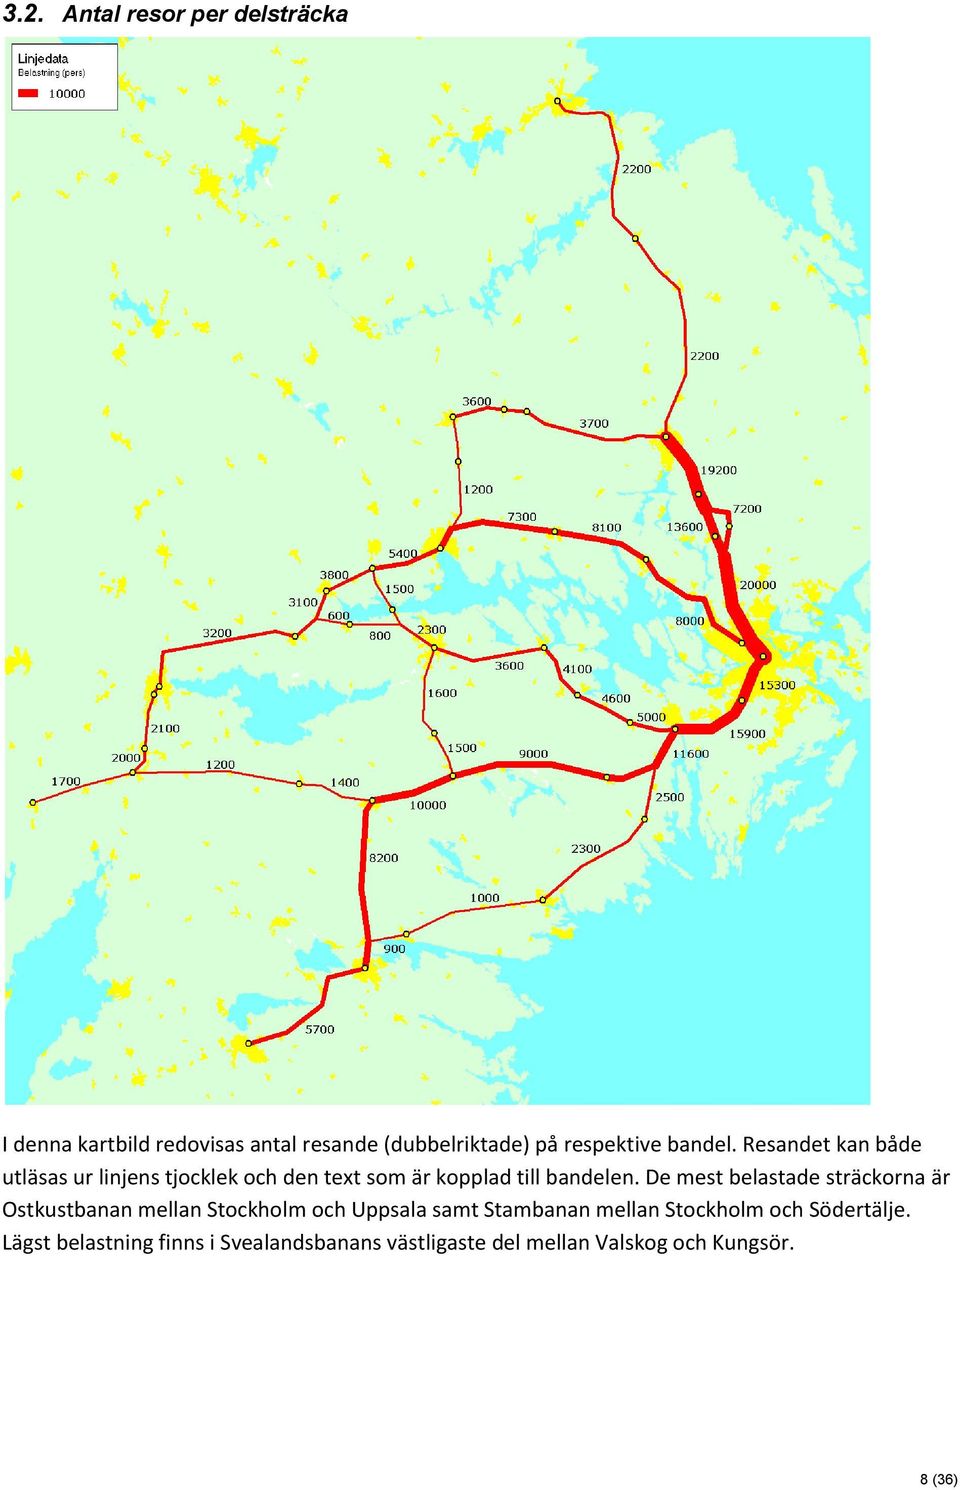 De mest belastade sträckorna är Ostkustbanan mellan Stockholm och Uppsala samt Stambanan mellan